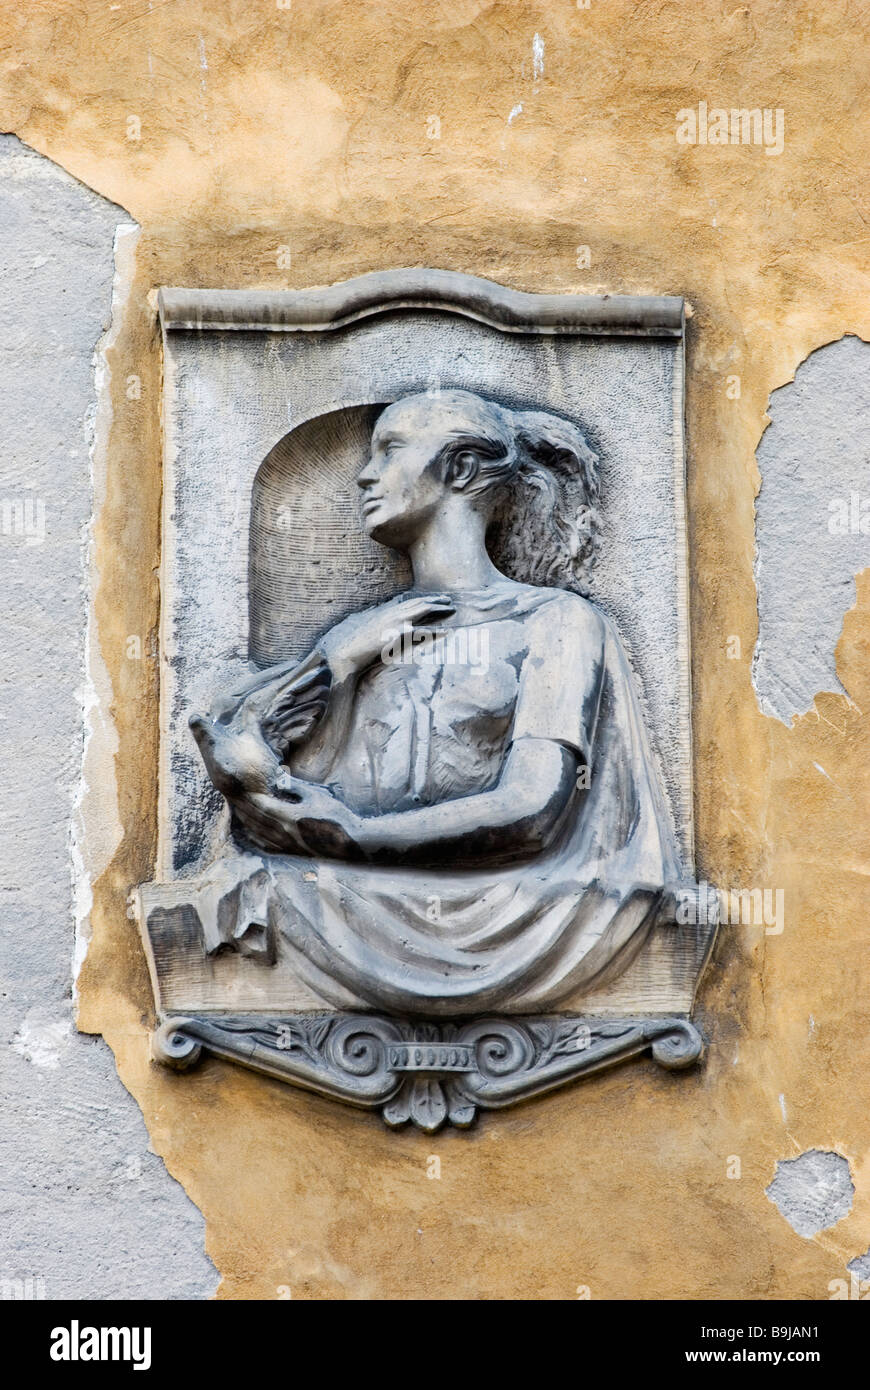 Una scultura in pietra di una donna e di una colomba della pace sull'esterno di un edificio nella Piazza del Mercato Vecchio (Stary Rynek), Poznan, Polonia Foto Stock